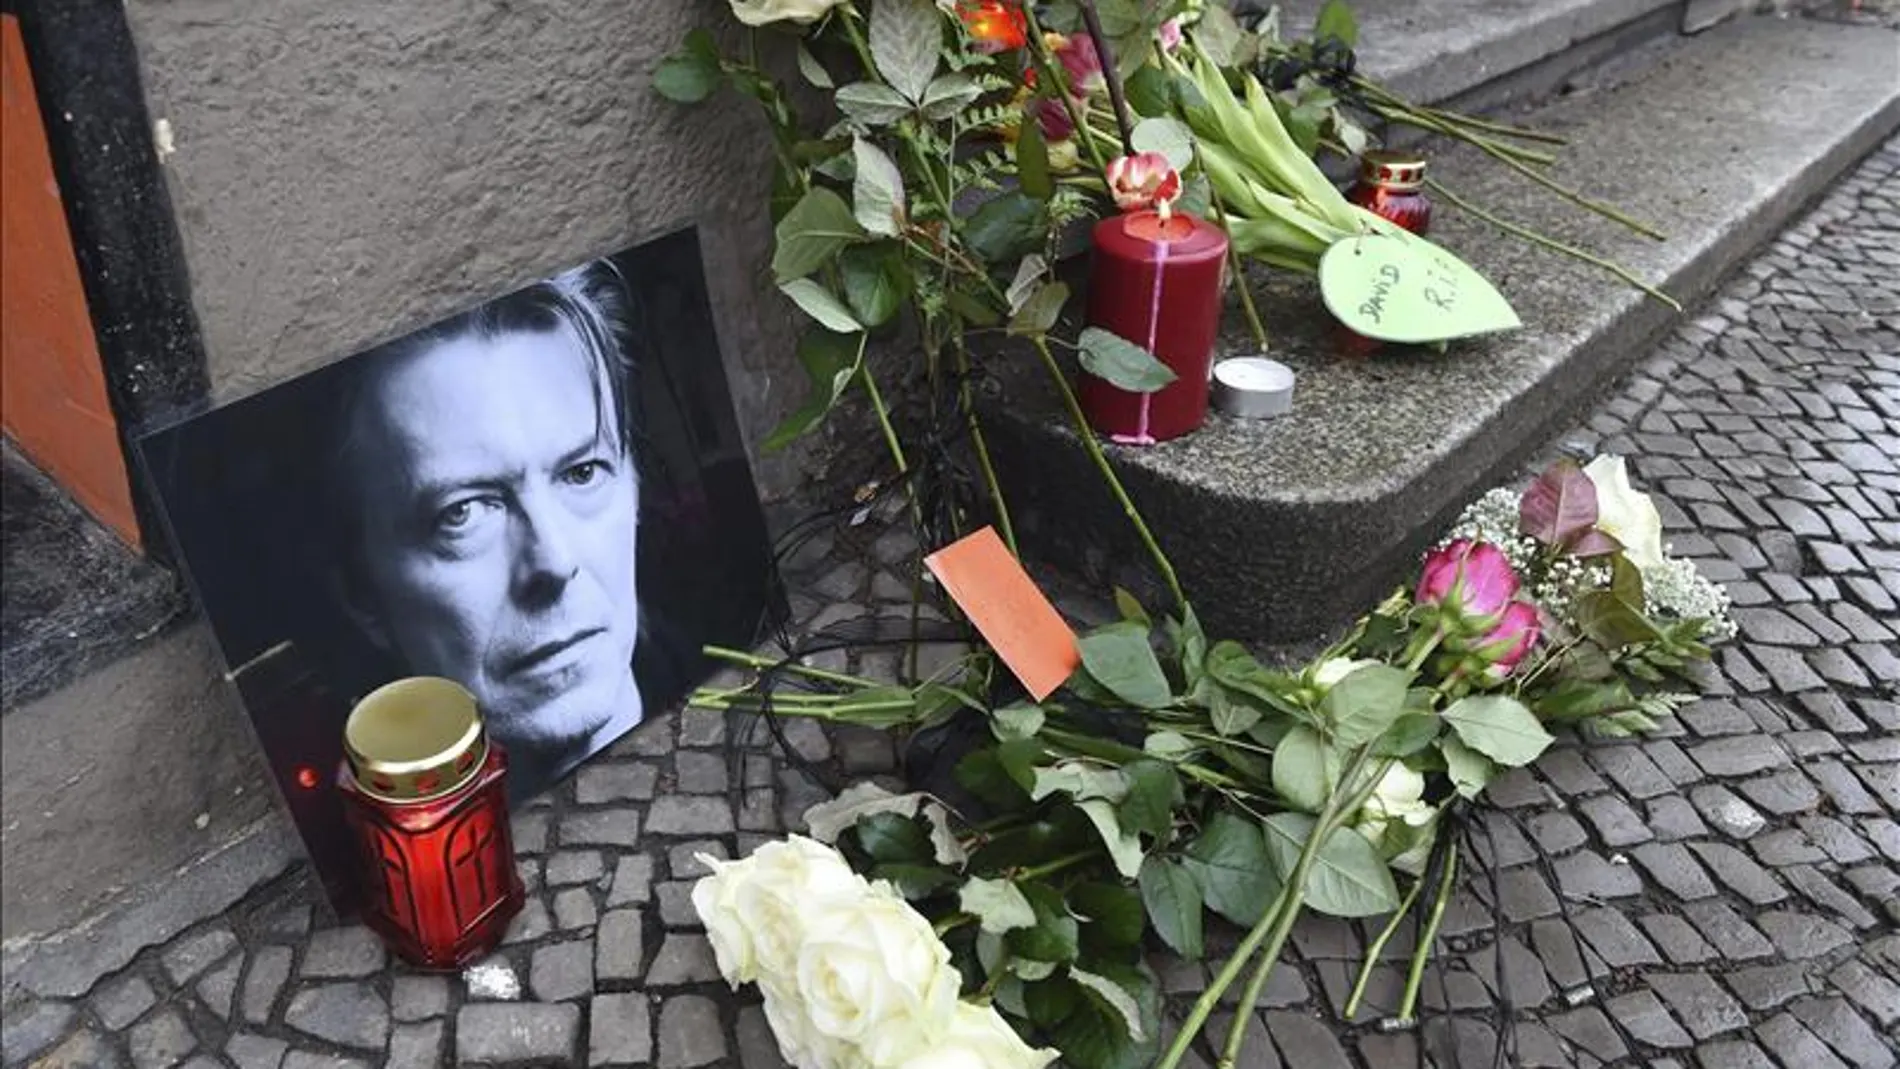 Flores y velas junto a una foto el cantante británico David Bowie